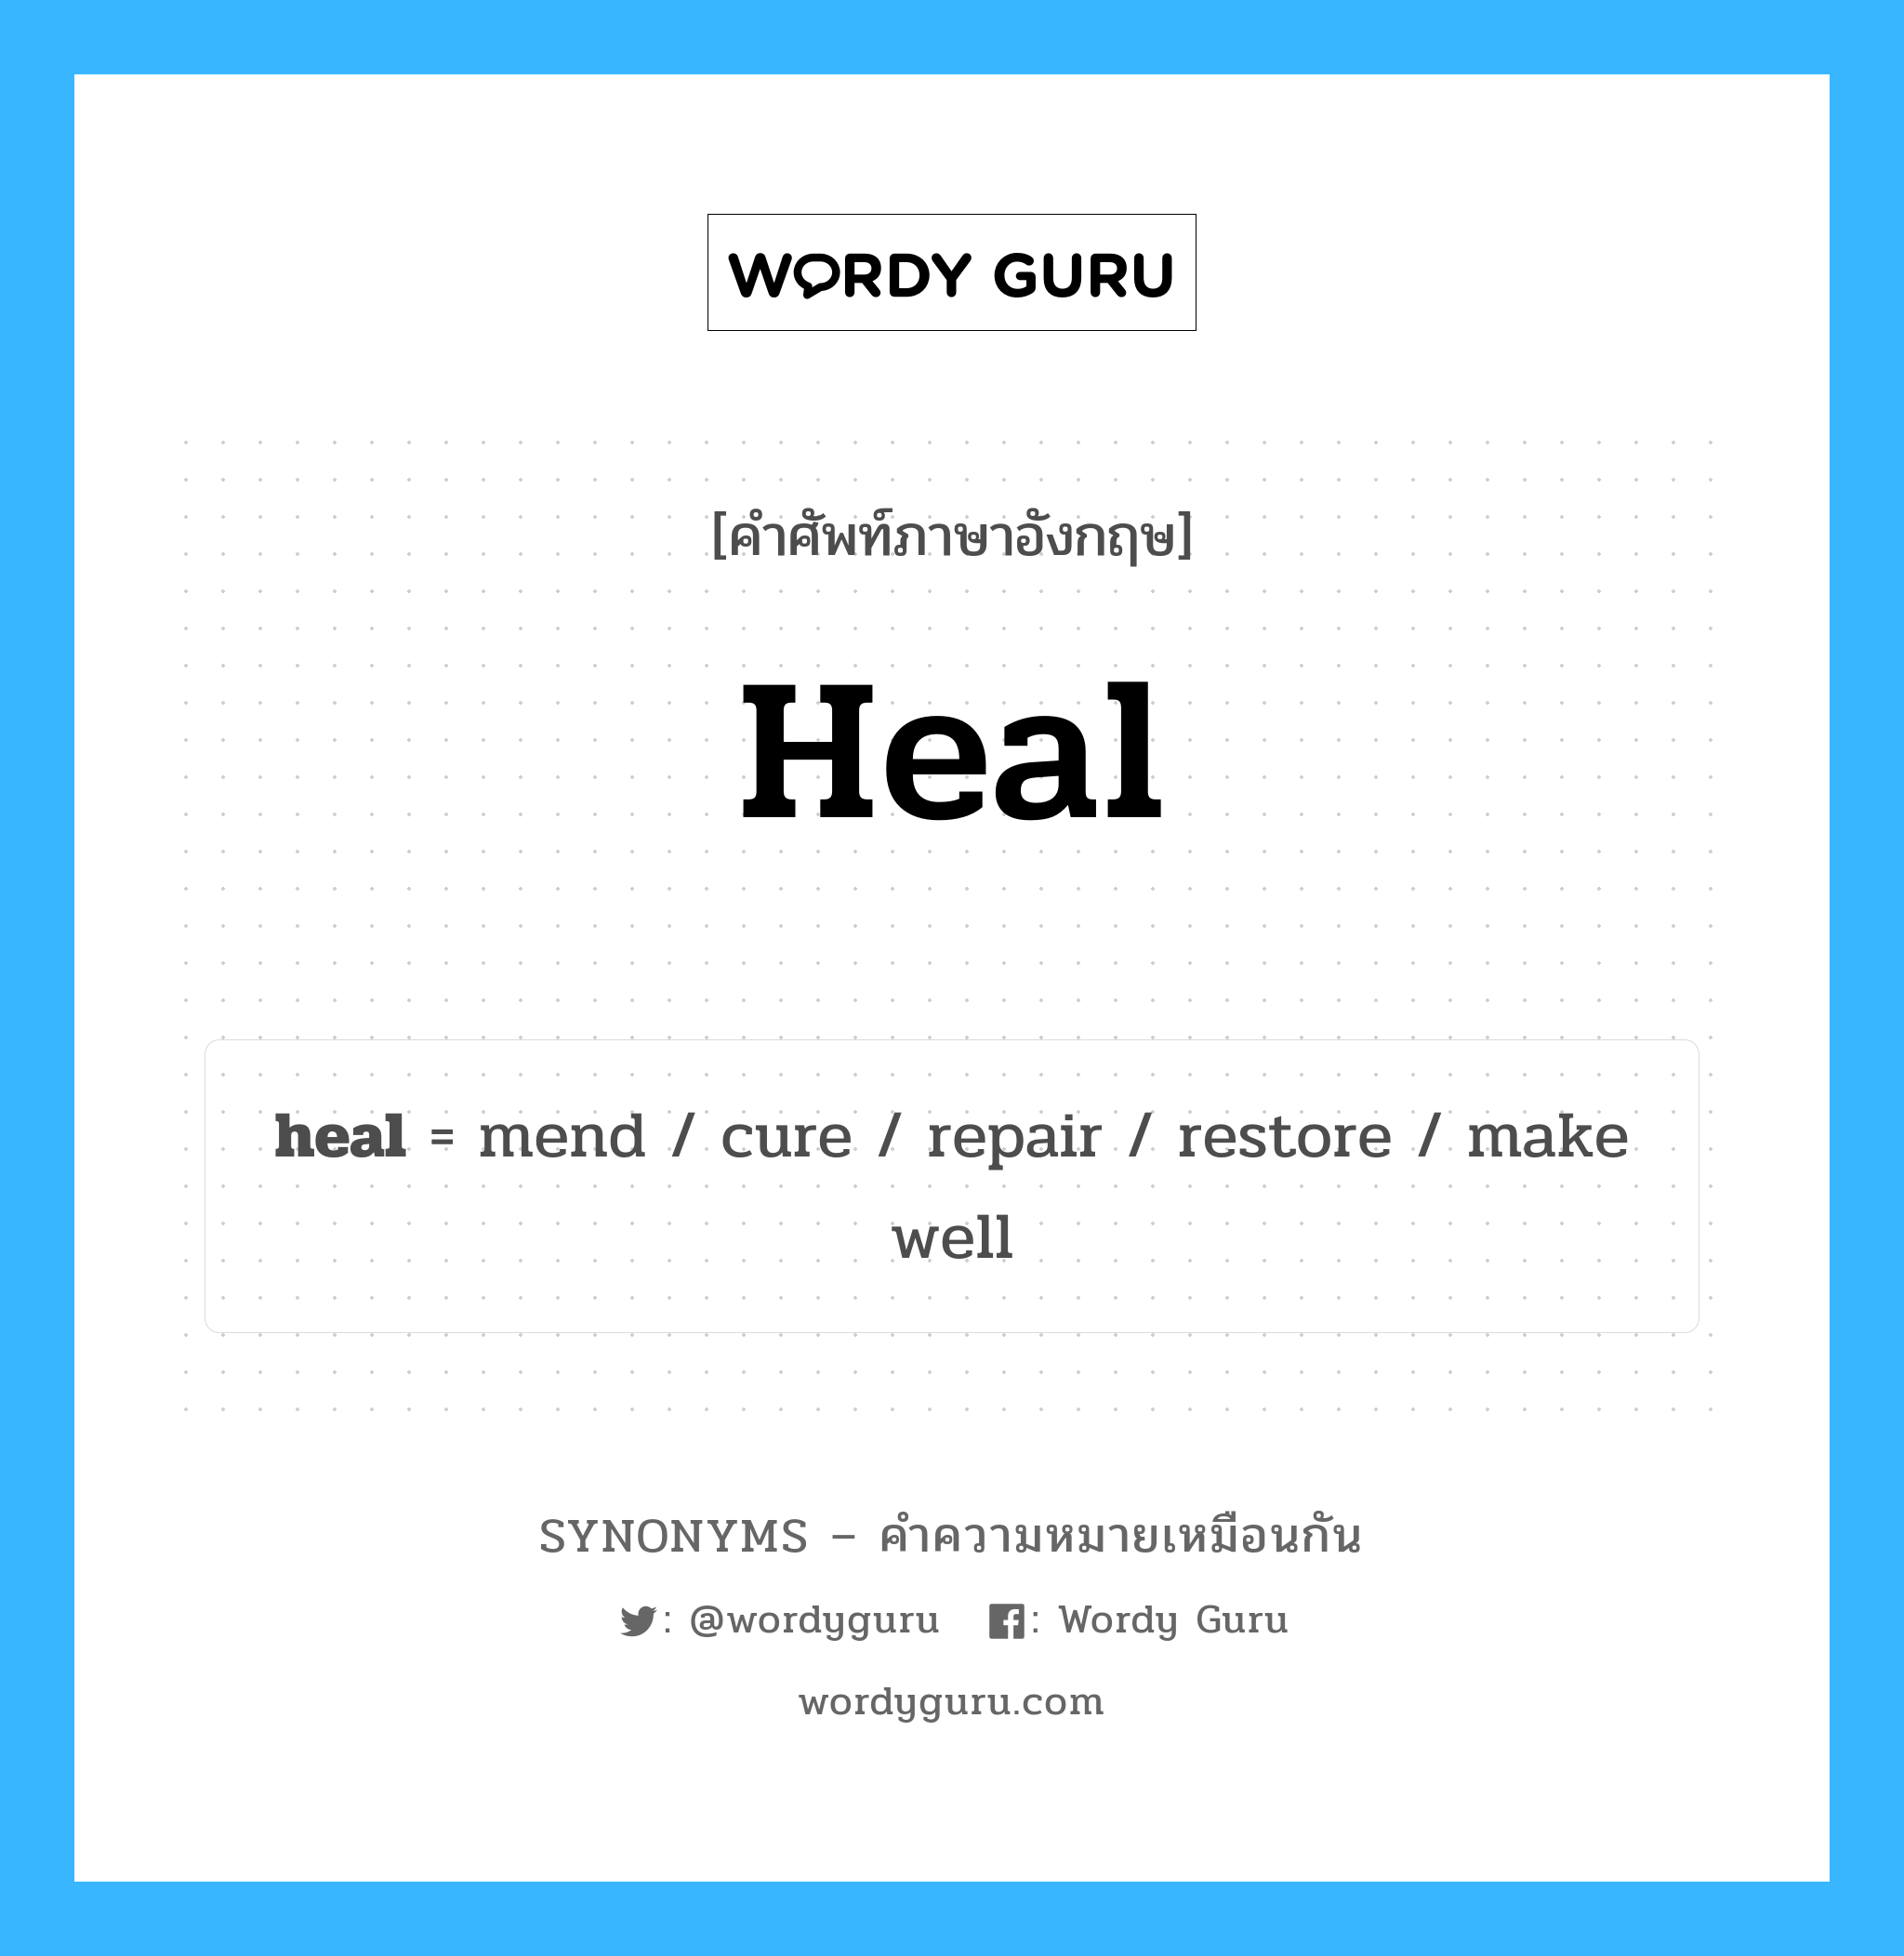 restore เป็นหนึ่งใน mend และมีคำอื่น ๆ อีกดังนี้, คำศัพท์ภาษาอังกฤษ restore ความหมายคล้ายกันกับ heal แปลว่า การคืนค่า หมวด heal